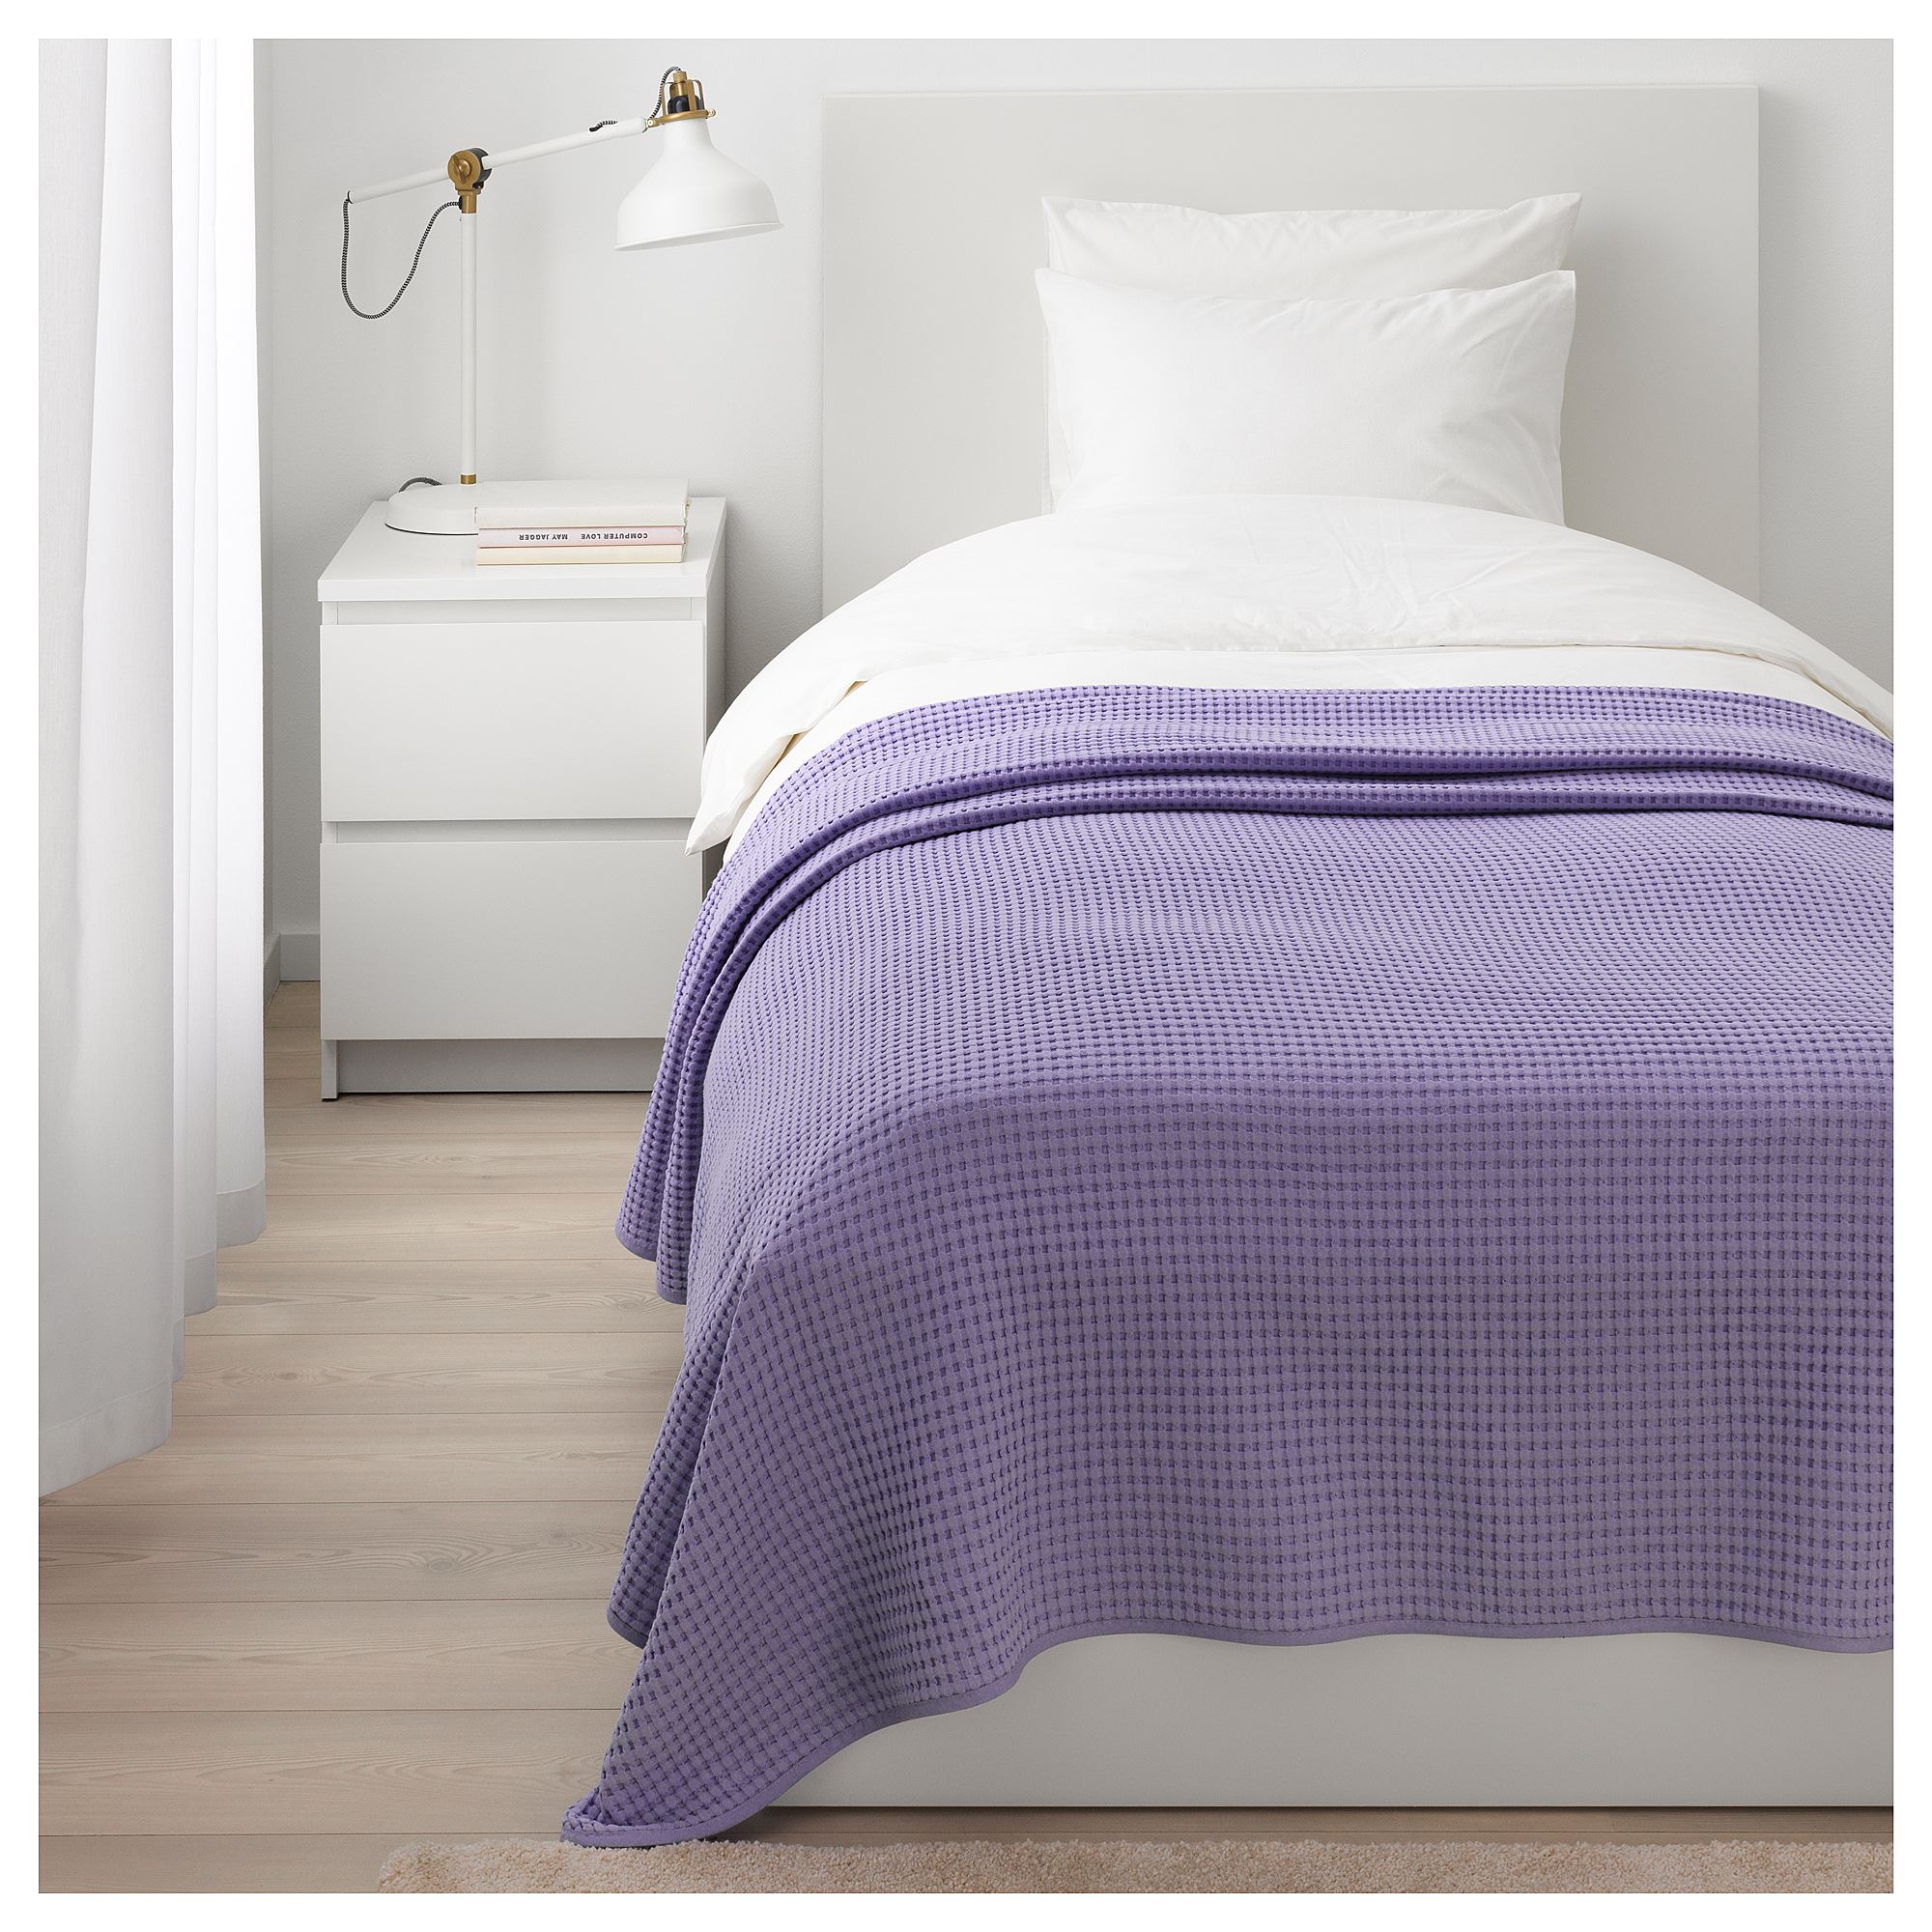 VARELD tek kişilik yatak örtüsü lila 150x250 cm IKEA Ev Tekstili